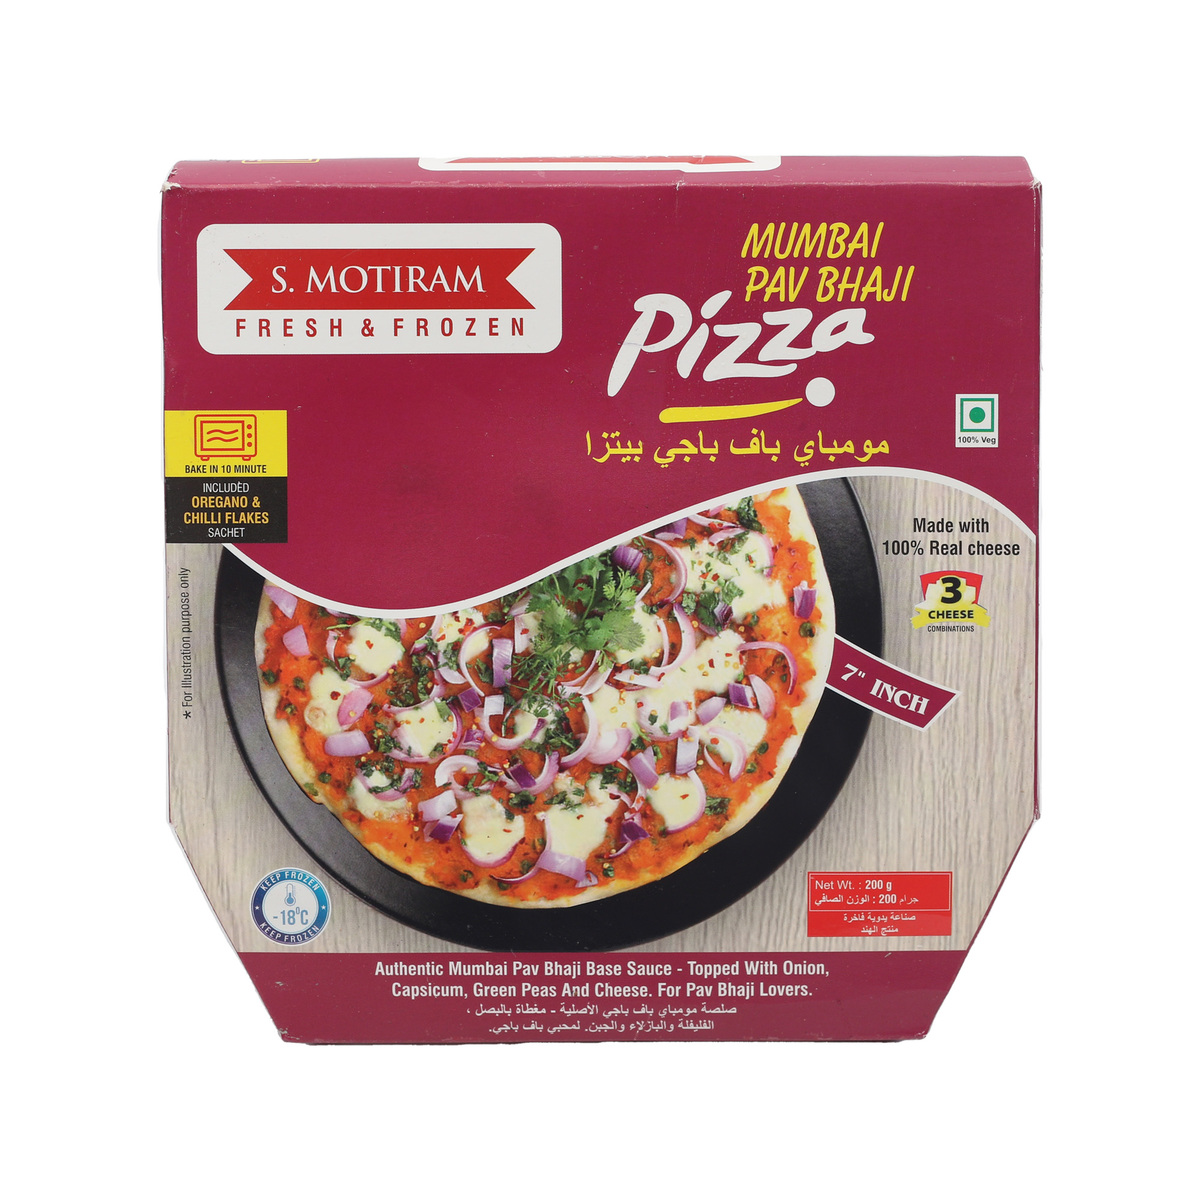 S. Motiram Mumbai Pav Bhaji 7" Pizza 200 g